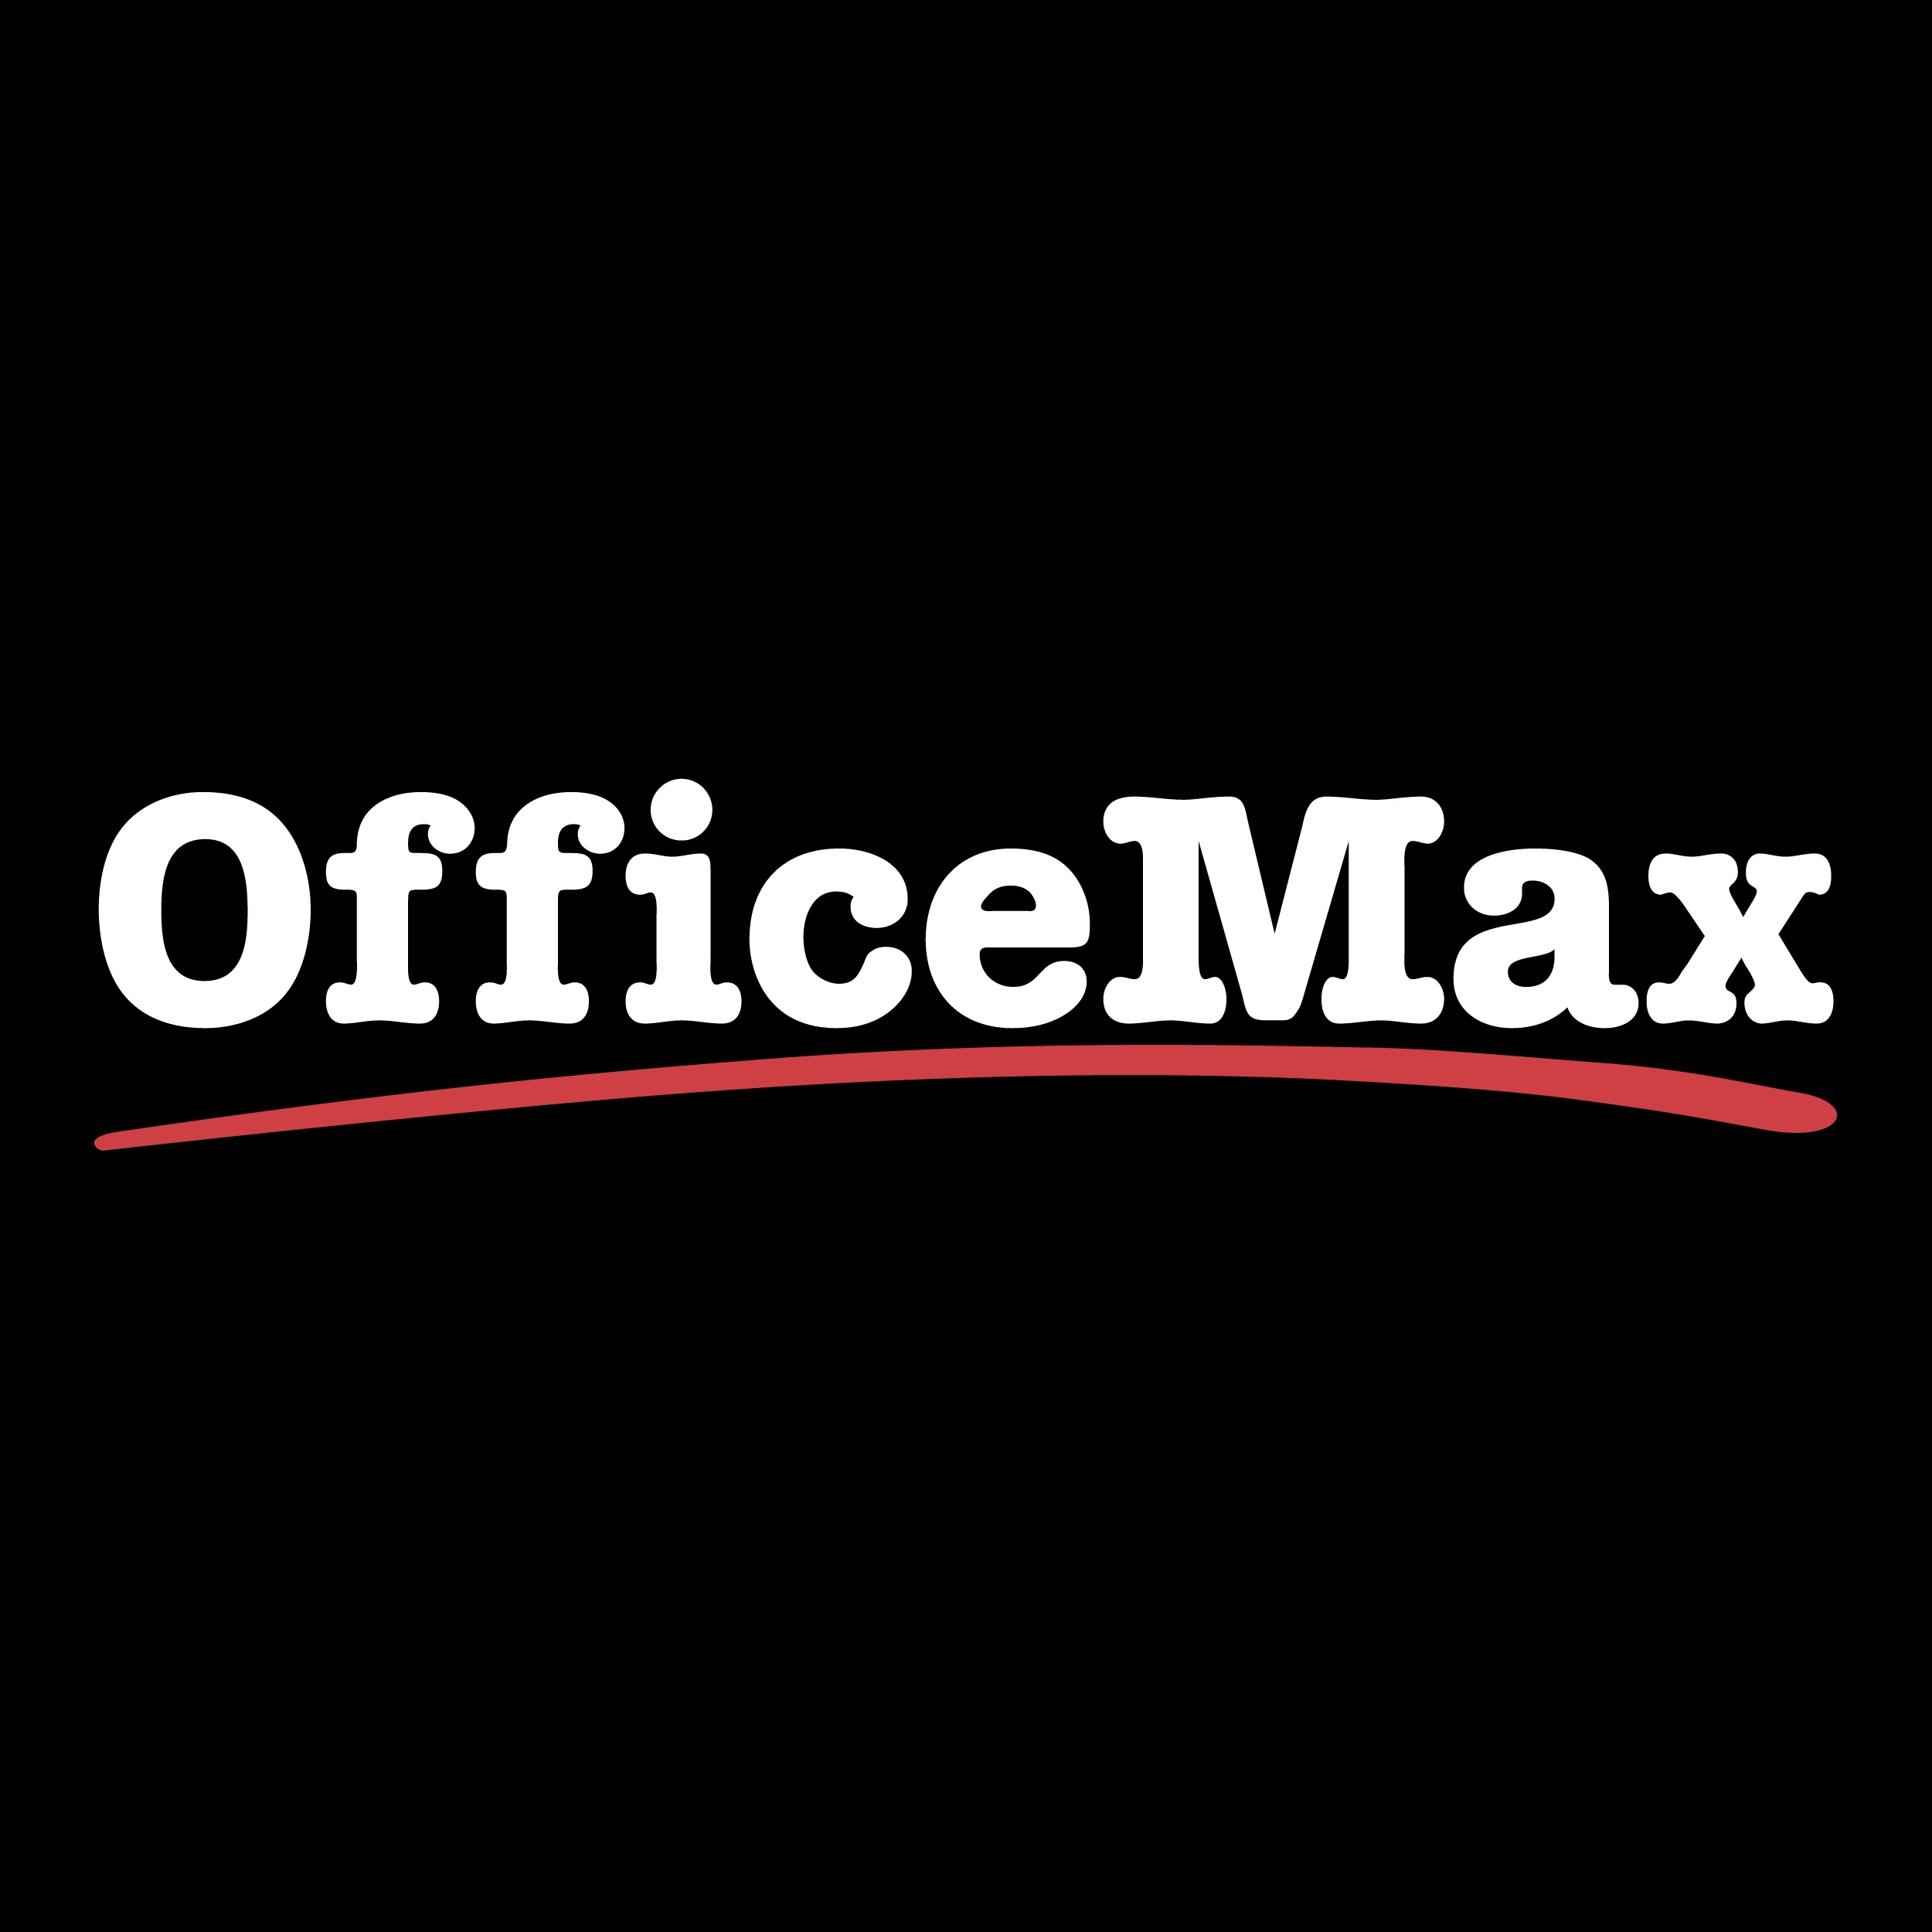 officemax-logo-svg-vector-01